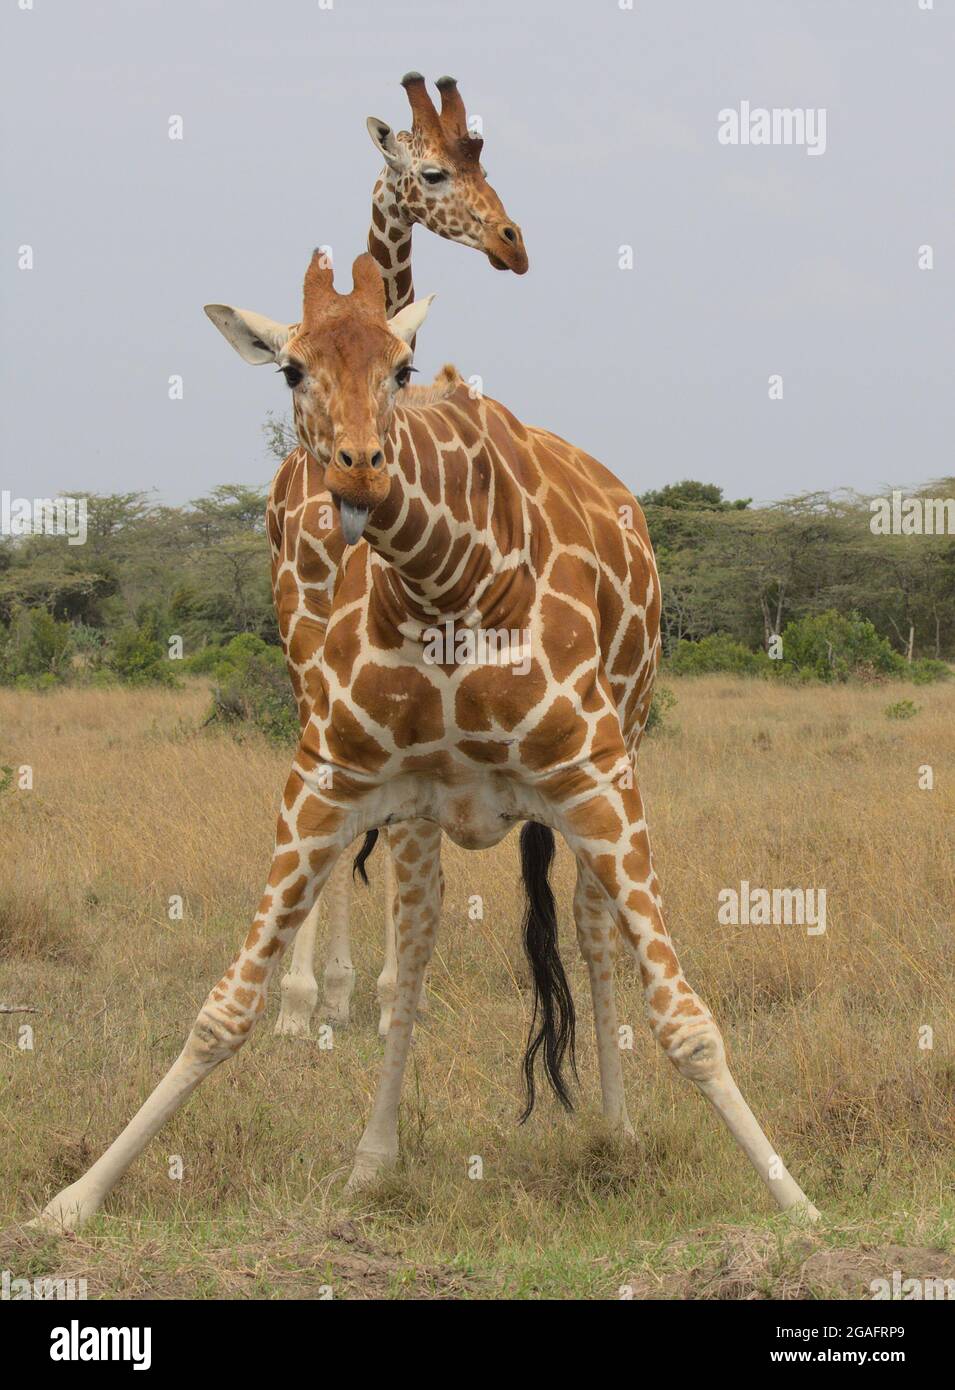 Una giraffa reticolata si guarda in su dopo aver preso una bevanda di acqua con la lingua che si stende fuori cheekily mentre un altro sostegno si ripara dietro esso nel selvaggio, Kenya Foto Stock